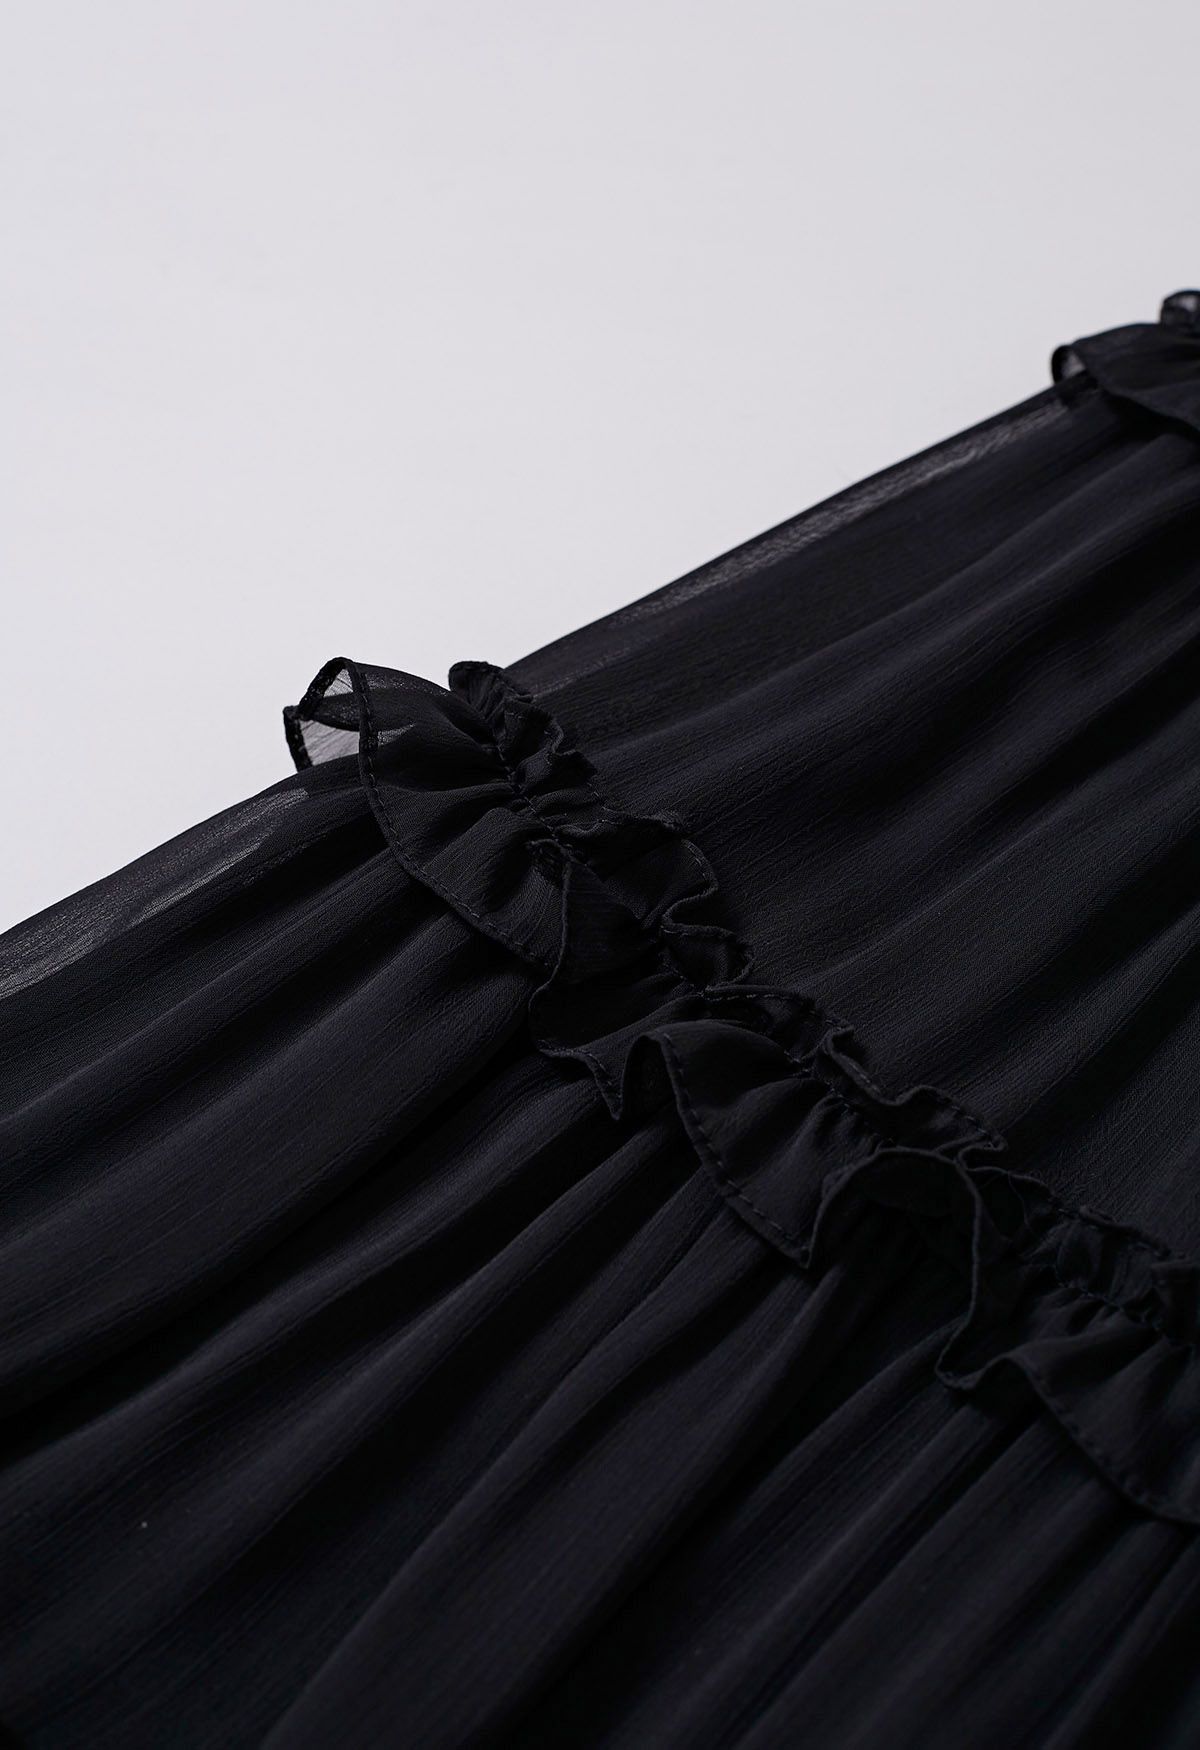 Adorable falda larga acampanada con ribete de volantes en negro